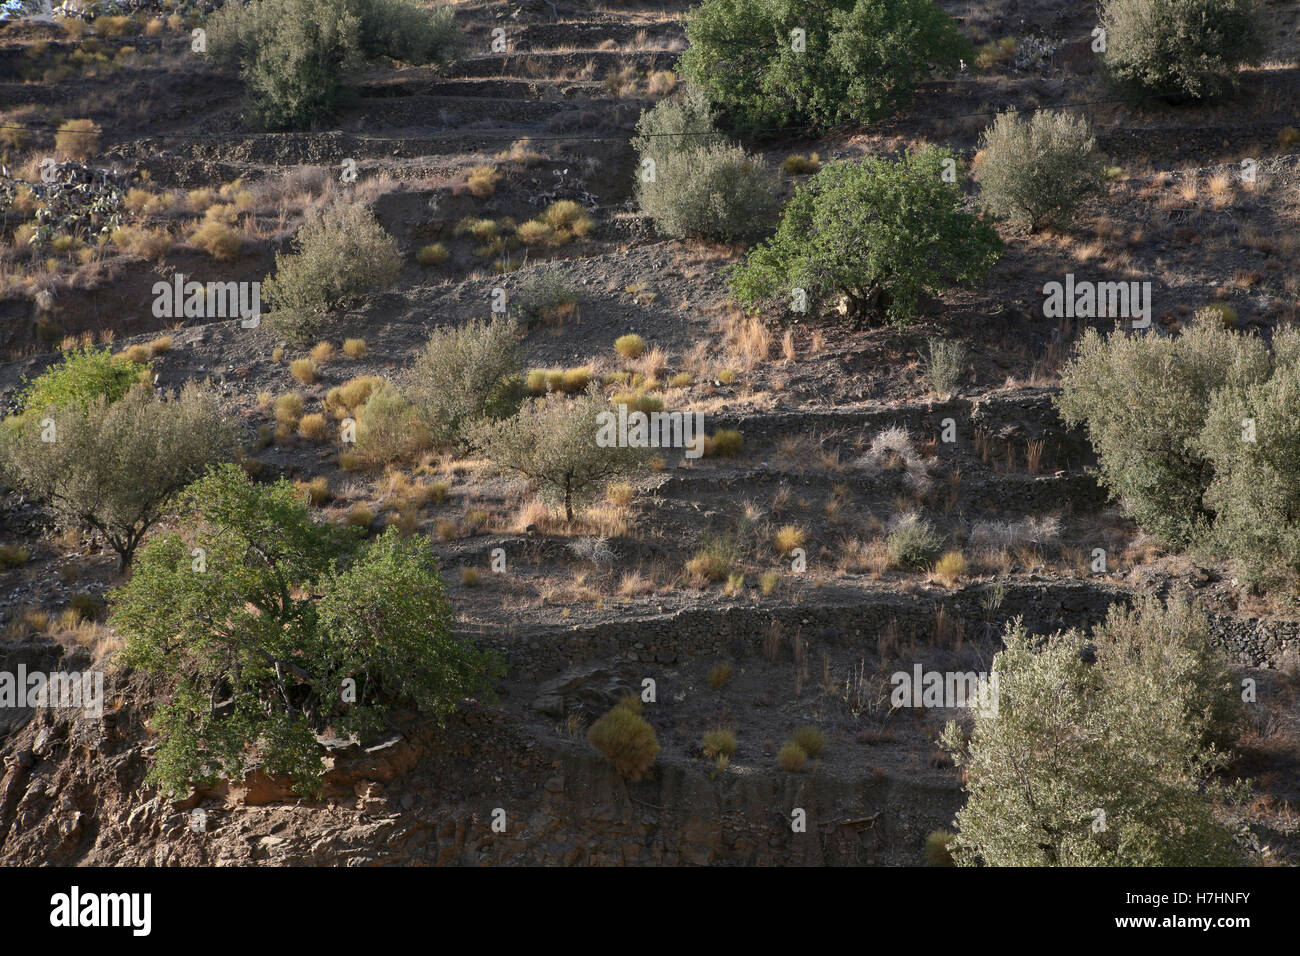 Vista de los paisajes agrícolas de Andalucía, al sur de España. Almendros y Olivos creciendo vertiginosamente en las terrazas de las laderas Foto de stock